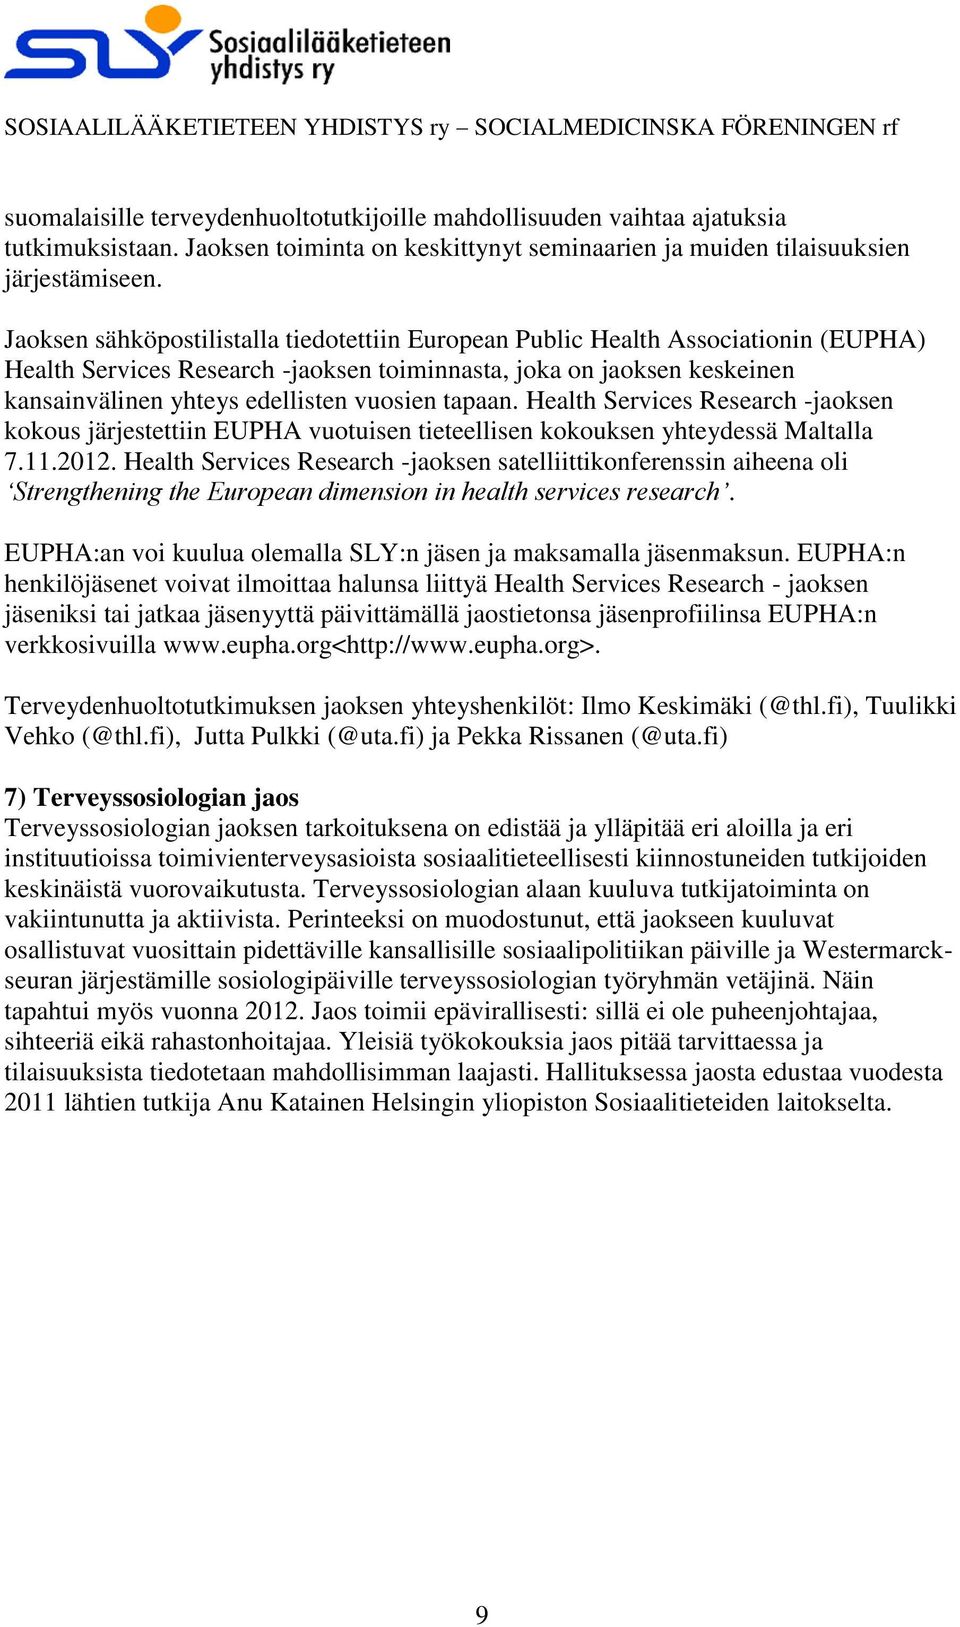 tapaan. Health Services Research -jaoksen kokous järjestettiin EUPHA vuotuisen tieteellisen kokouksen yhteydessä Maltalla 7.11.2012.